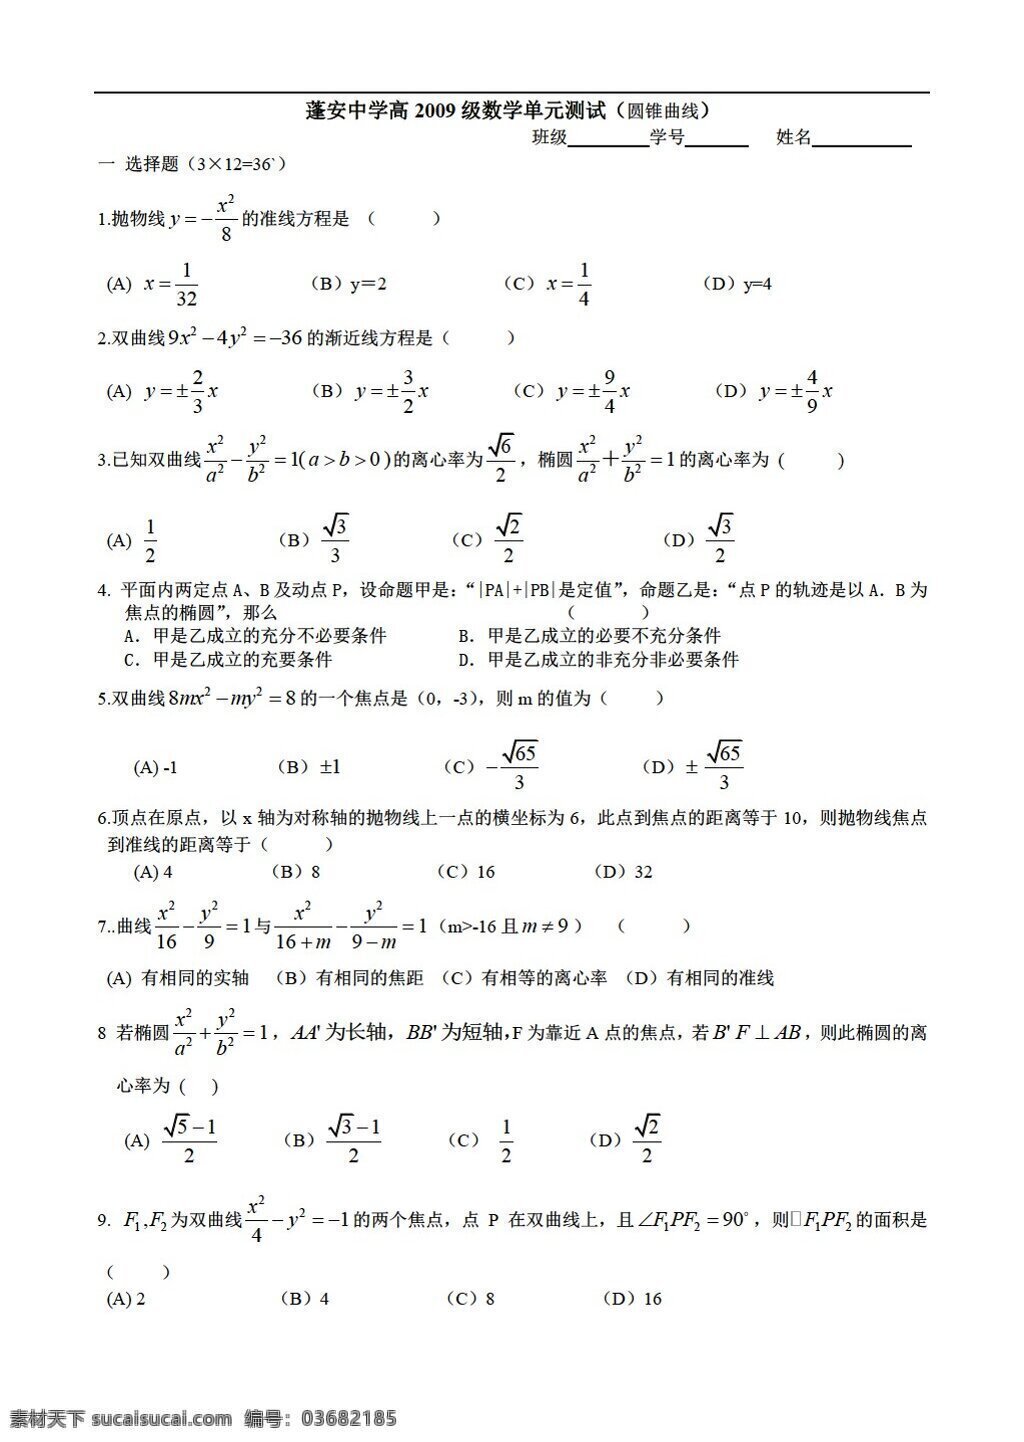 数学 人教 版 四川省 蓬安 中学 高 2009 级 单元 测试 圆锥曲线 人教版 第二册上 试卷